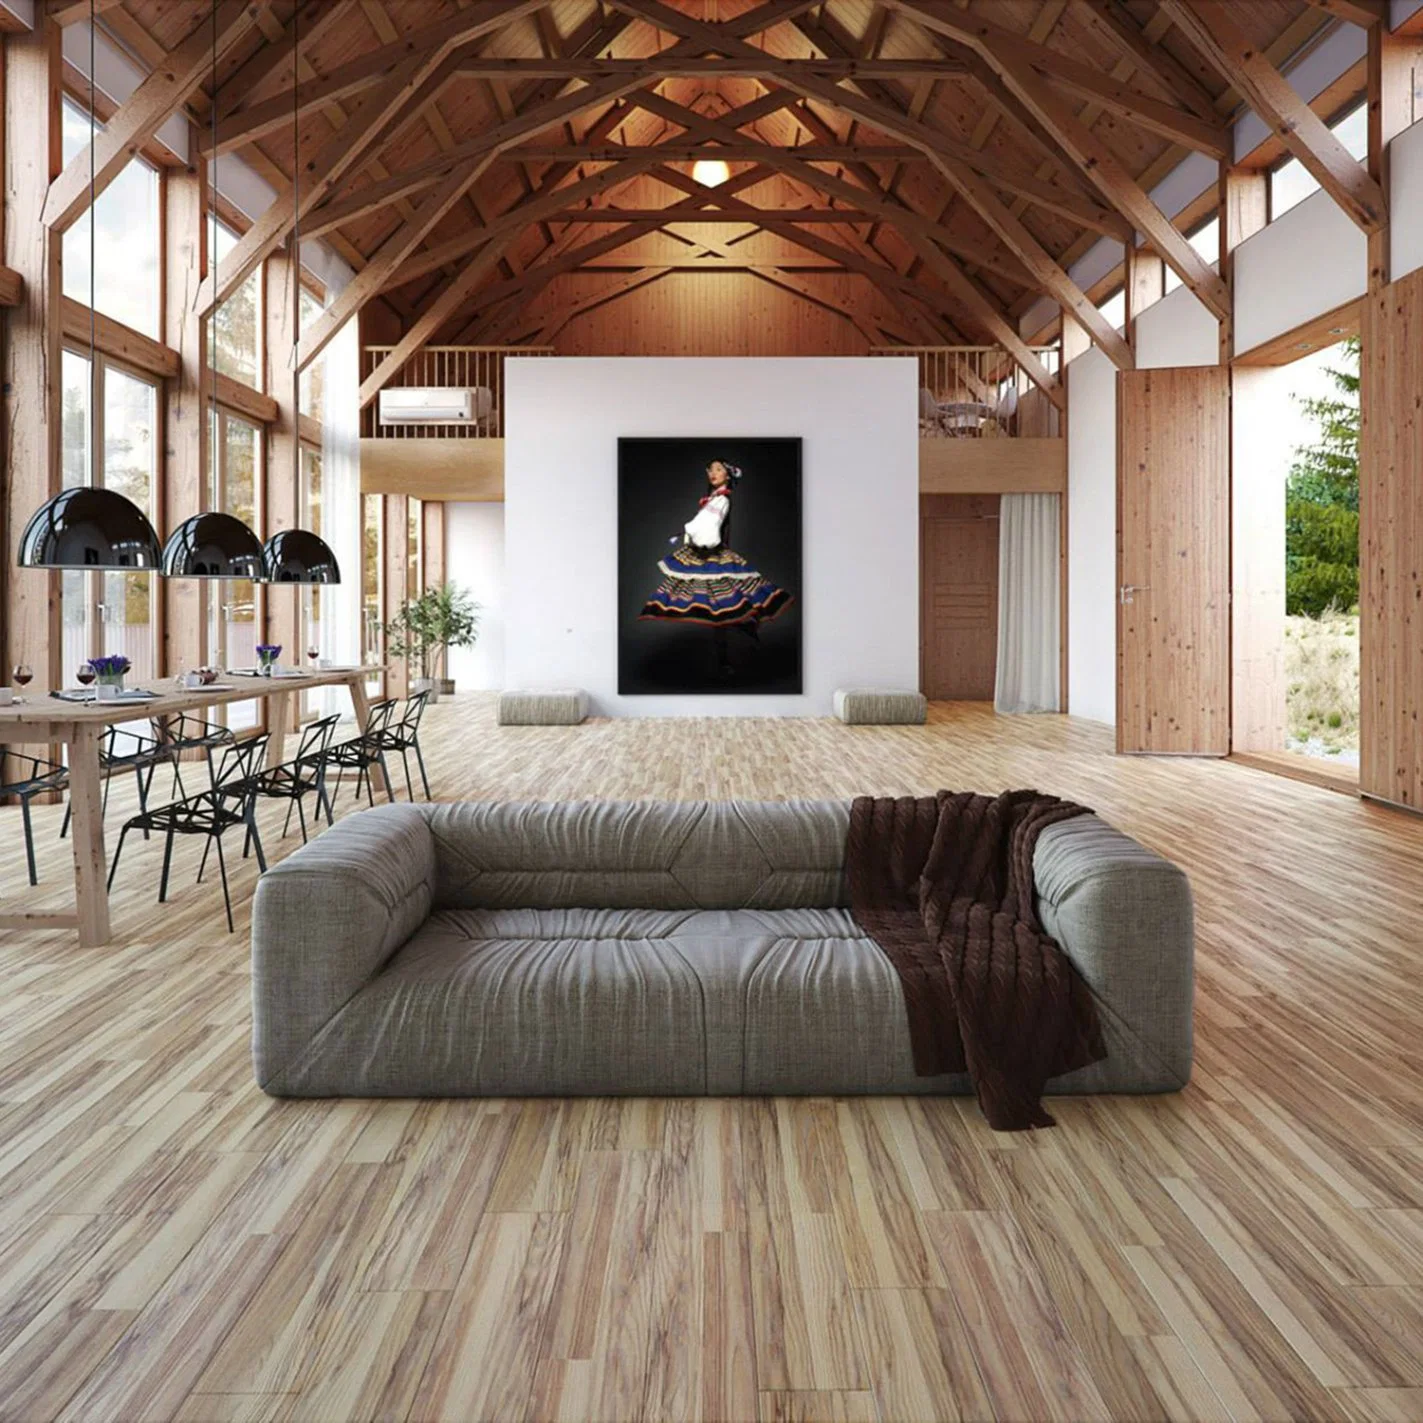 Som absorvente pisos laminados de madeira laminada em carvalho vinílico com relevo